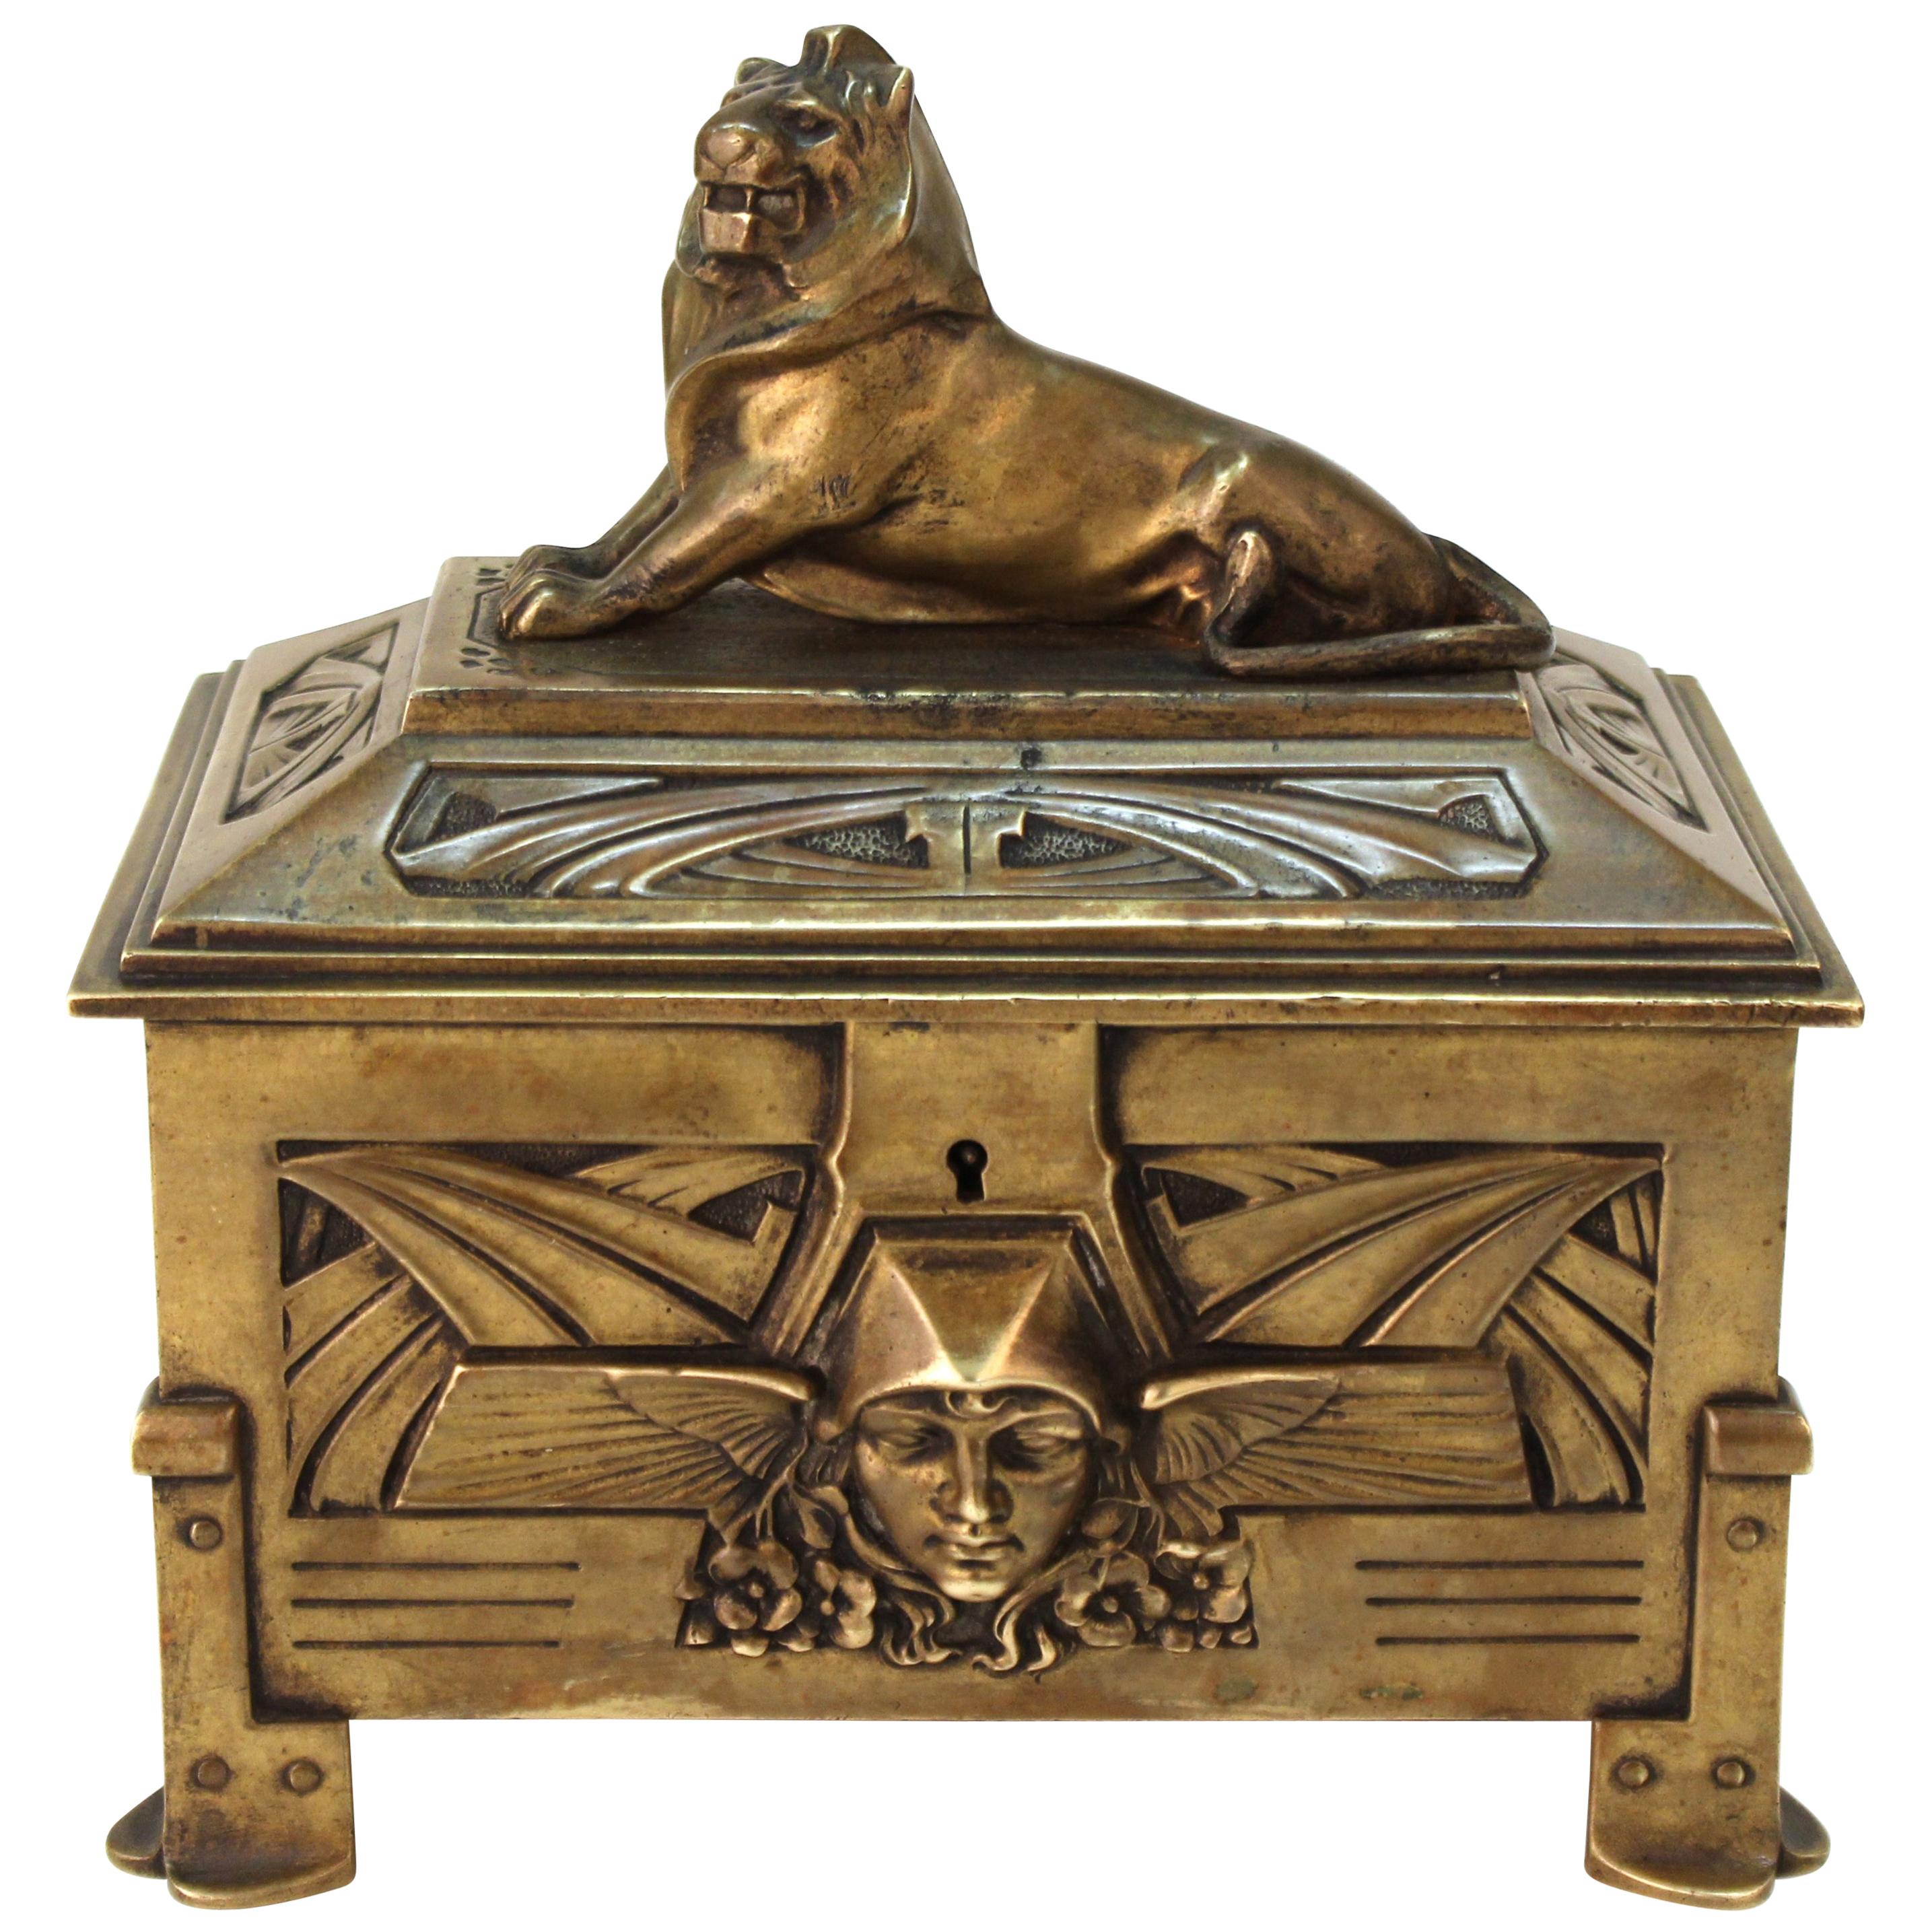 German Jugendstil Bronze Jewelry Box or Casket with Lion Guardian Lid